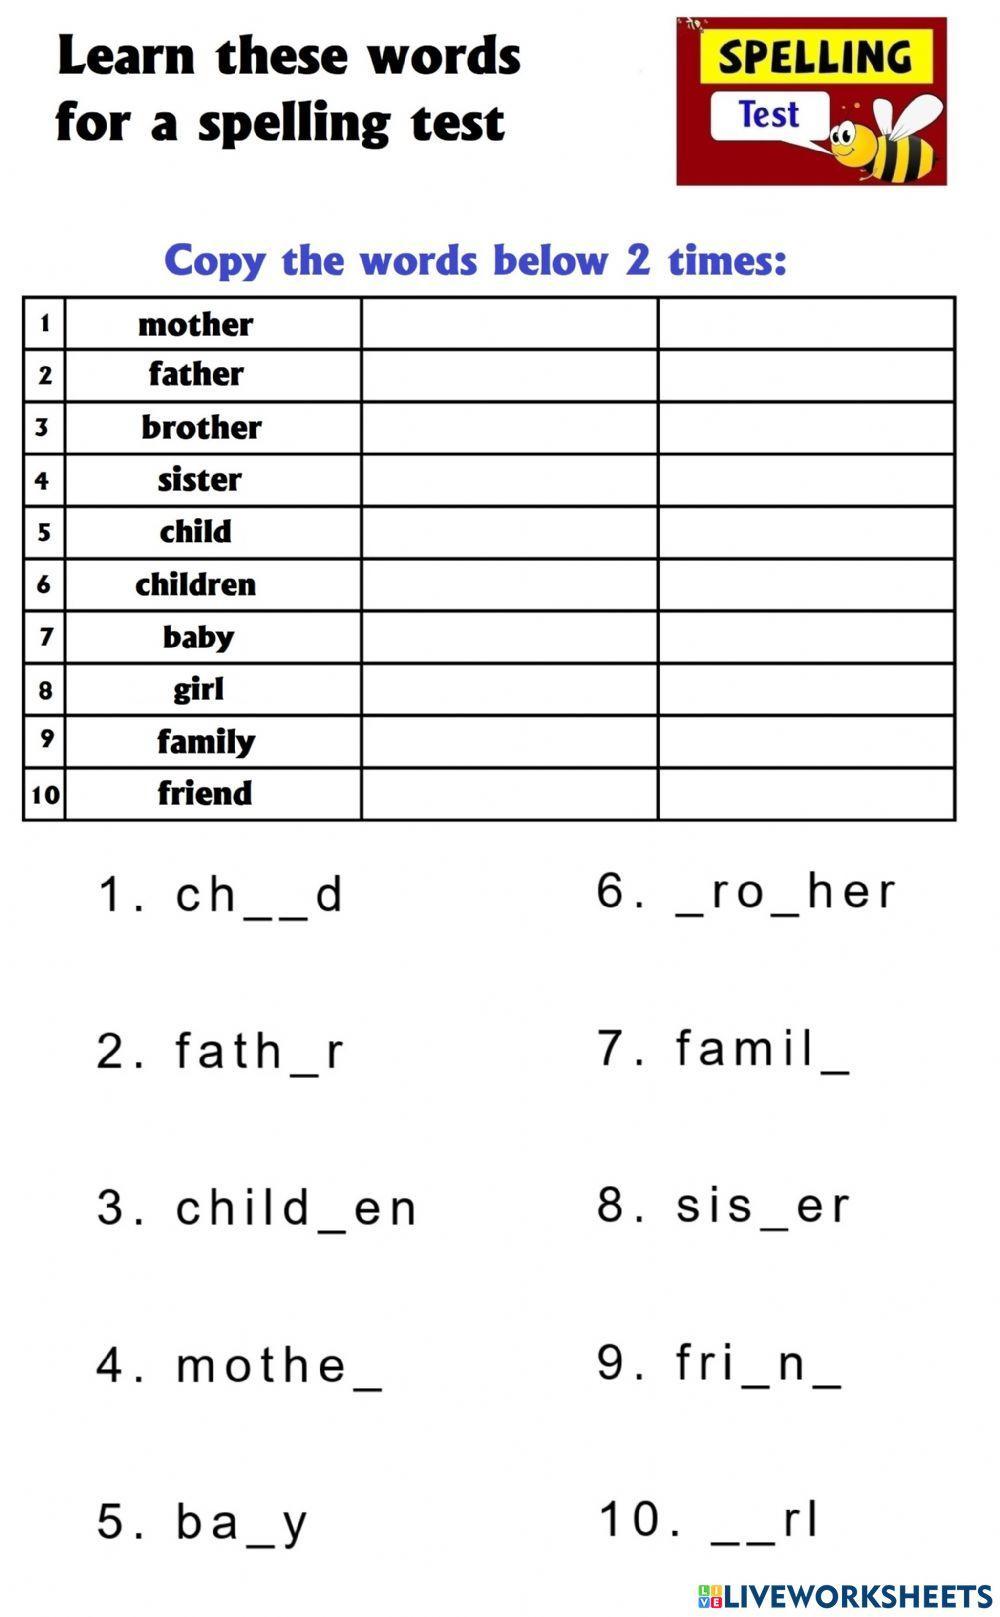 Spelling words -Family-